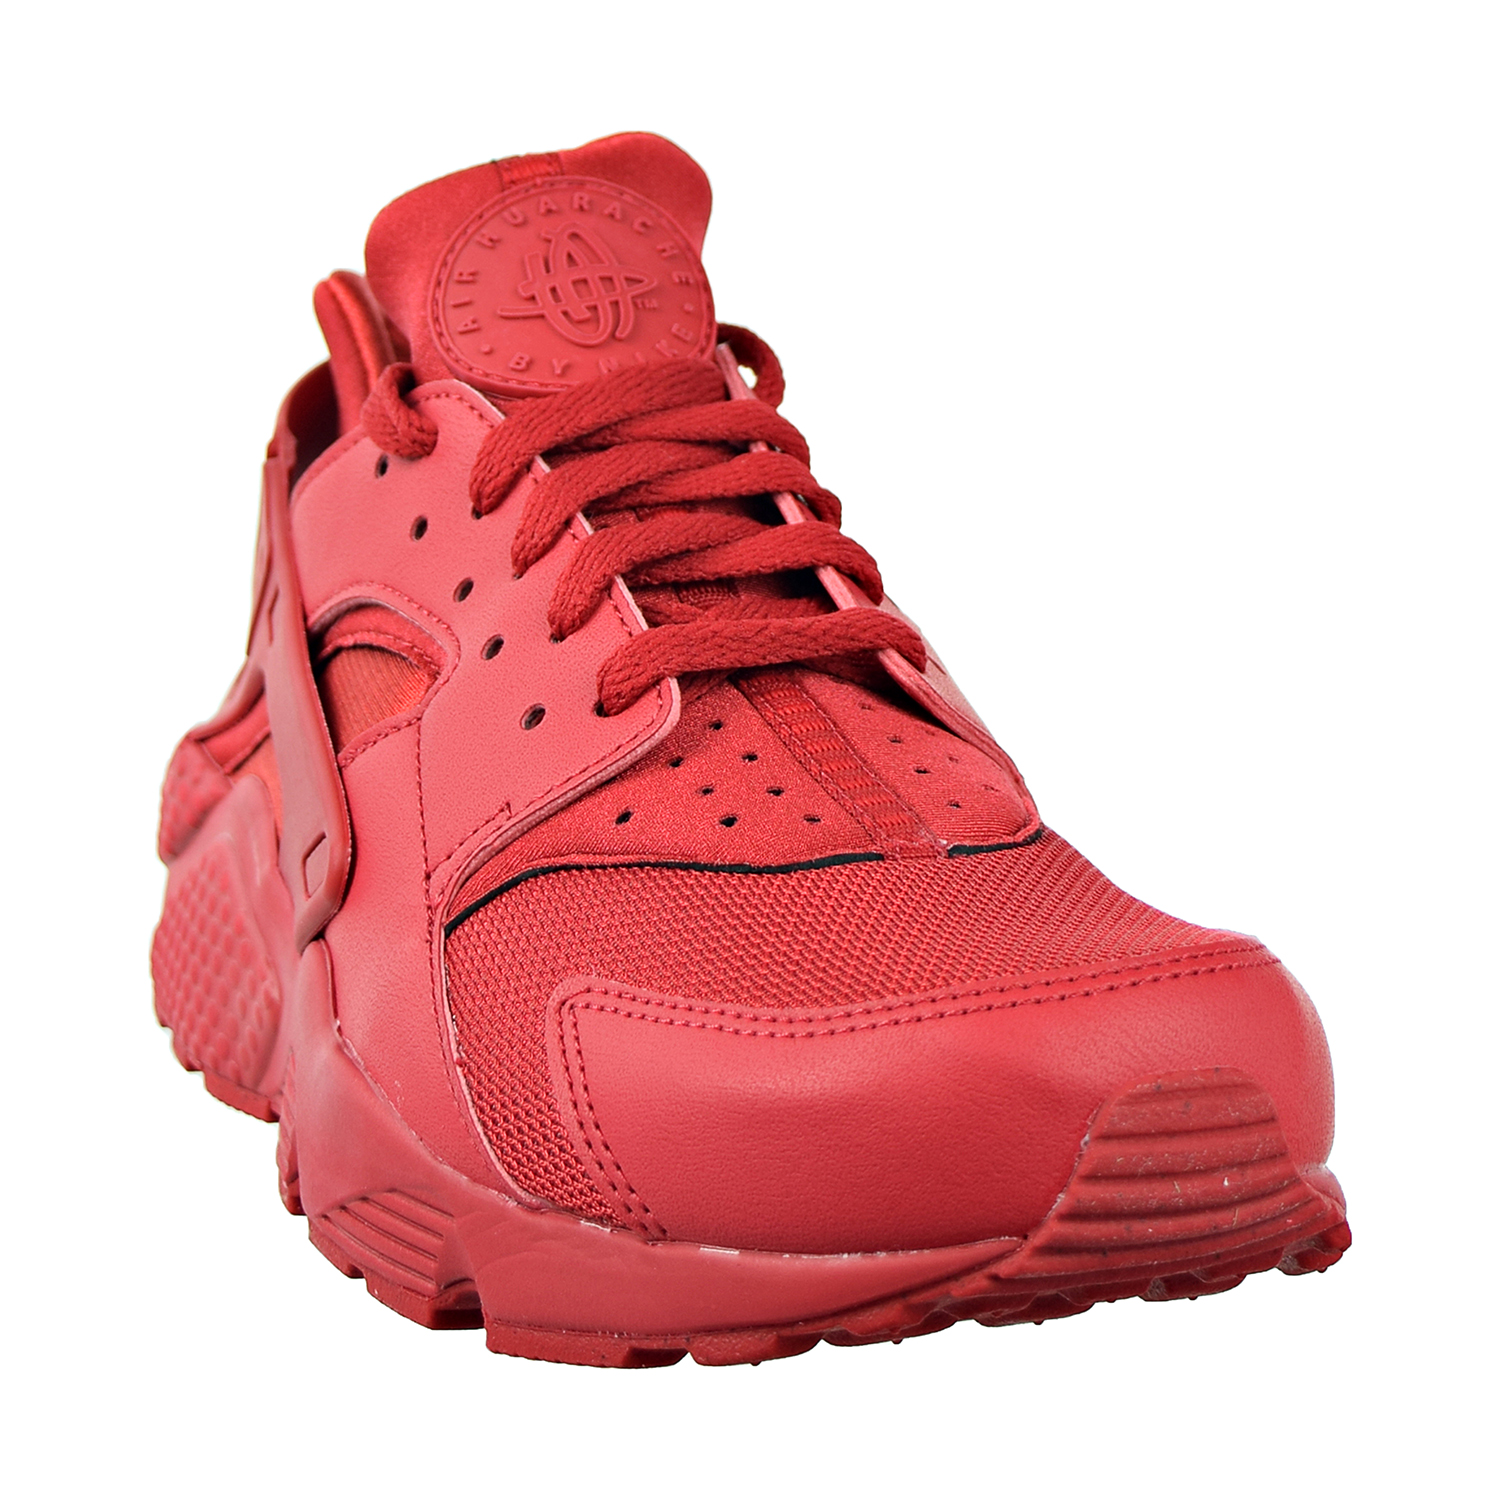 Nike Air Huarache Mens Shoes Varsity Red-Varsity Red 318429-660 | eBay